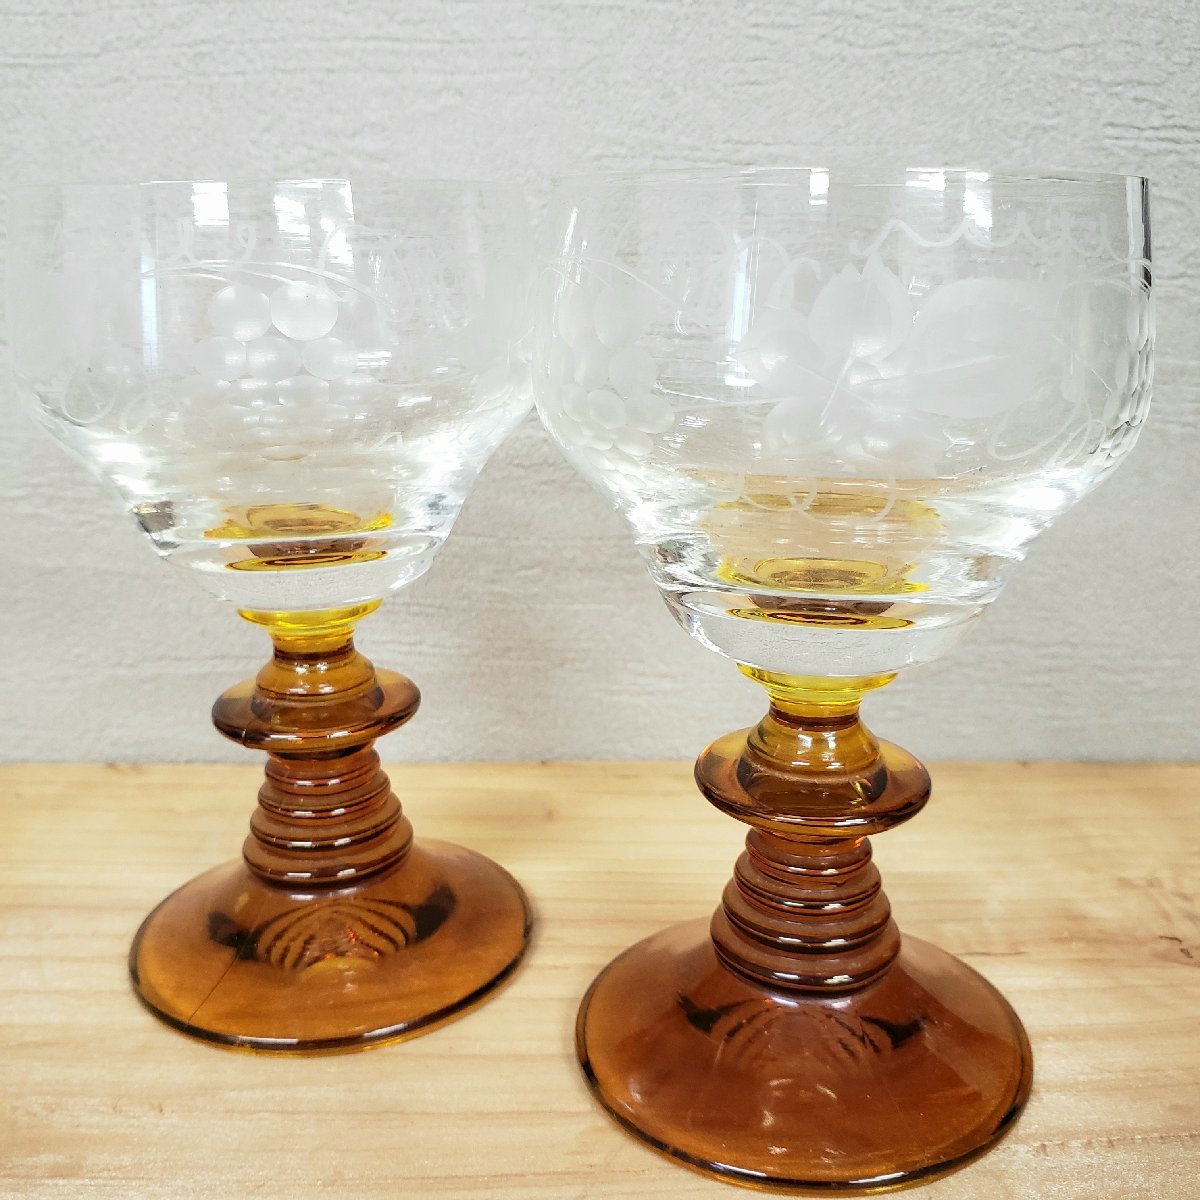  бокал для вина пара re-ma- стакан янтарь мед цвет виноград рисунок стакан скульптура античный retro Германия производства? высота 11.8cm [60a311]